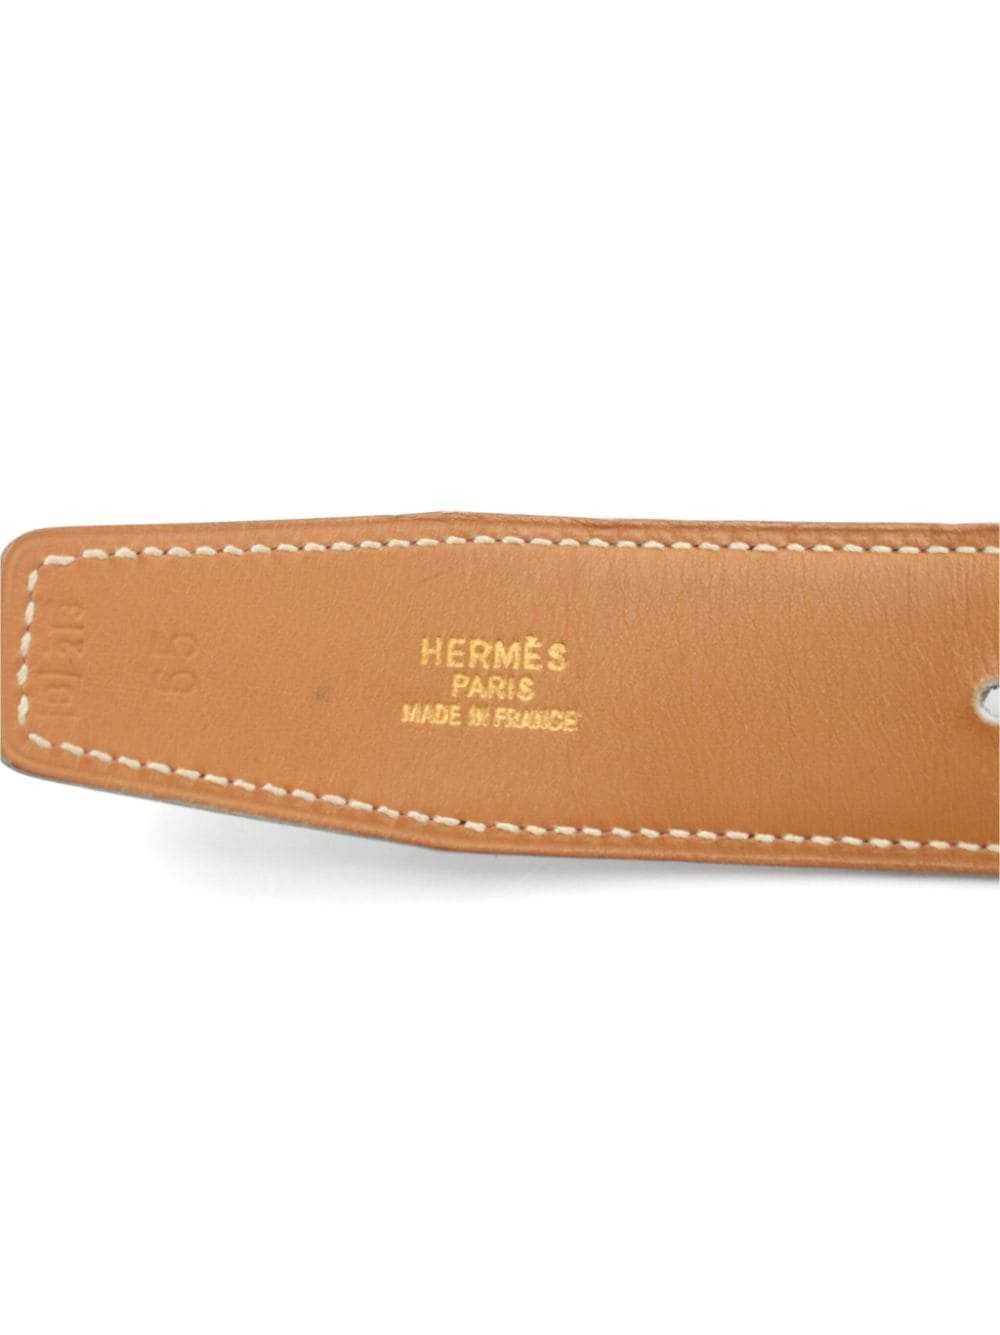 Hermès Pre-Owned 1998 Cadena reversible belt - Br… - image 4